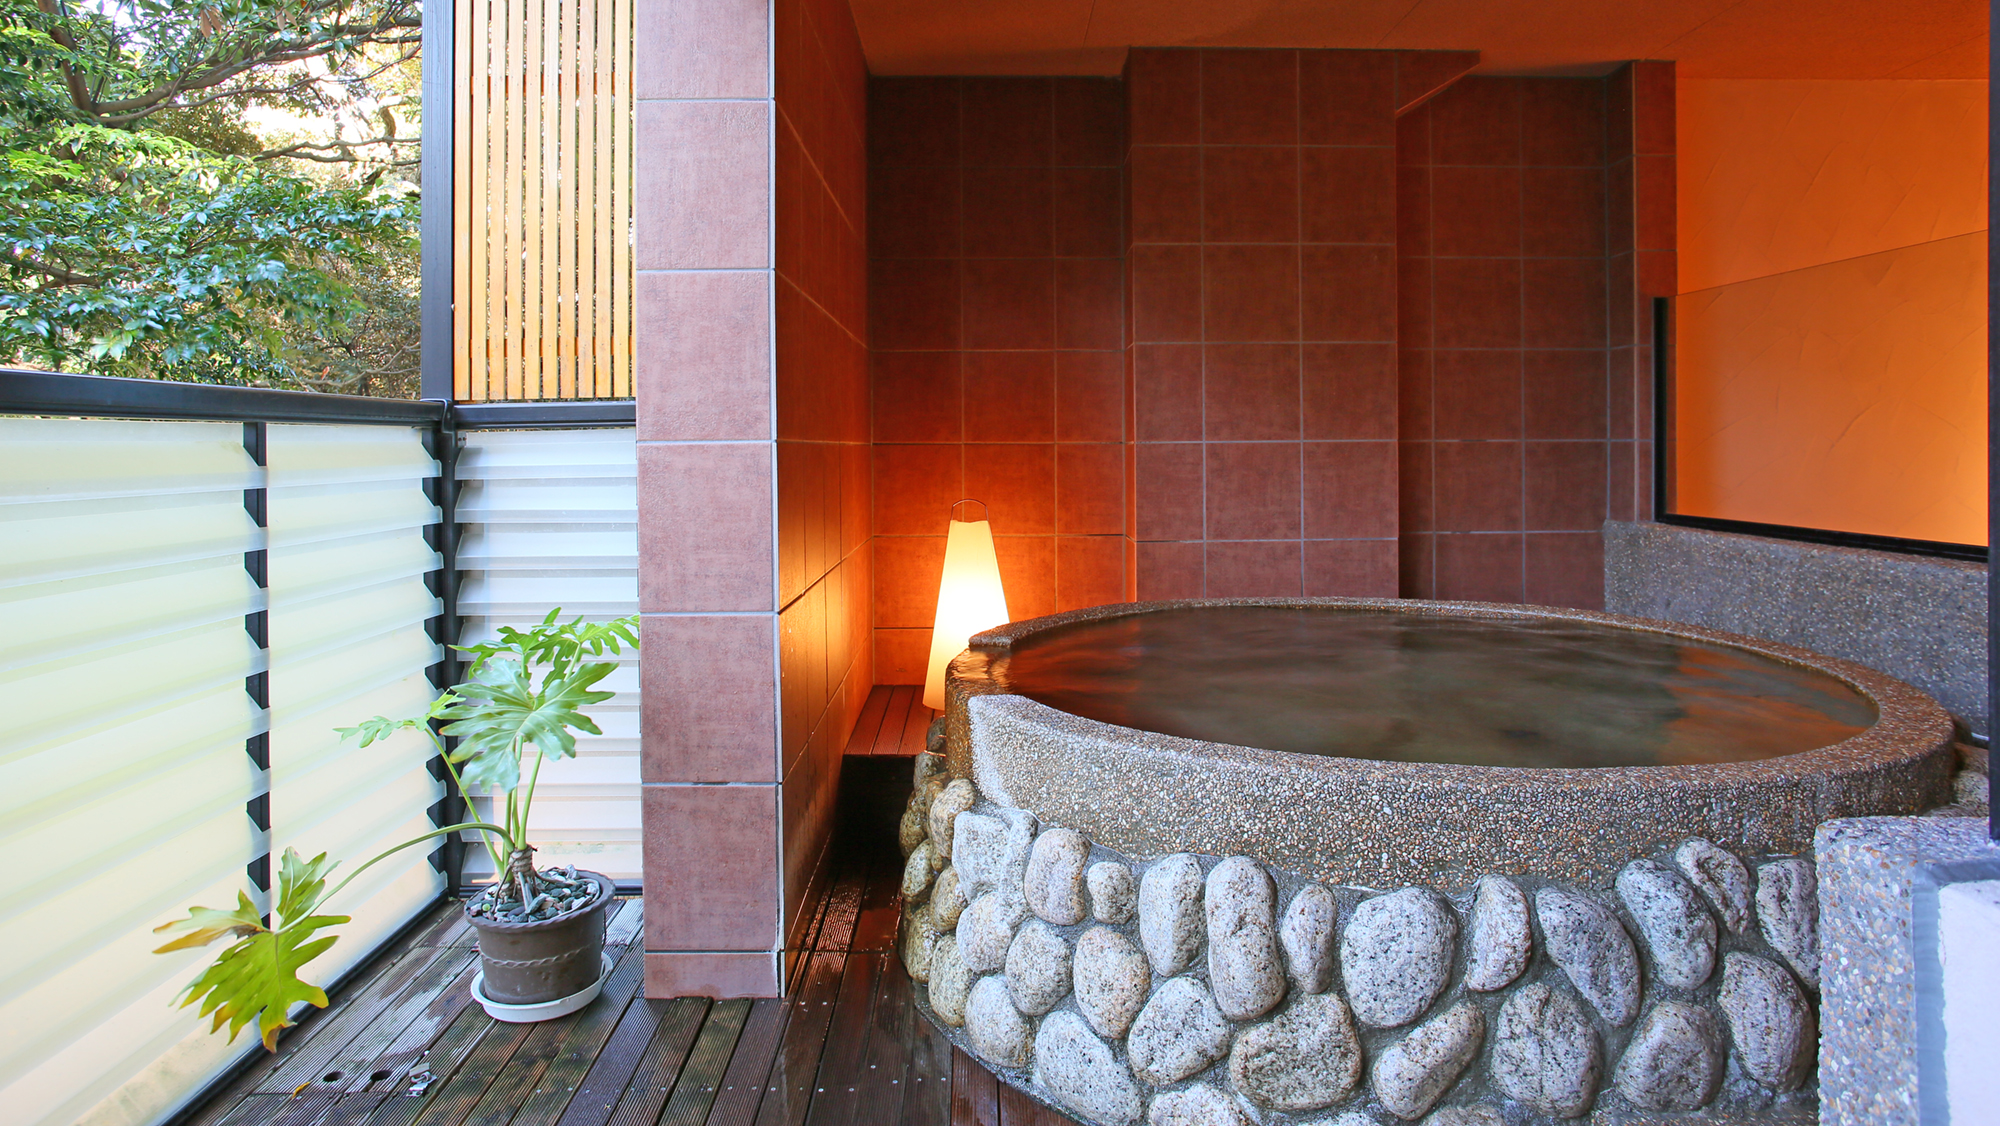 貸切露天風呂で伊東温泉をじっくりゆっくりご堪能ください。